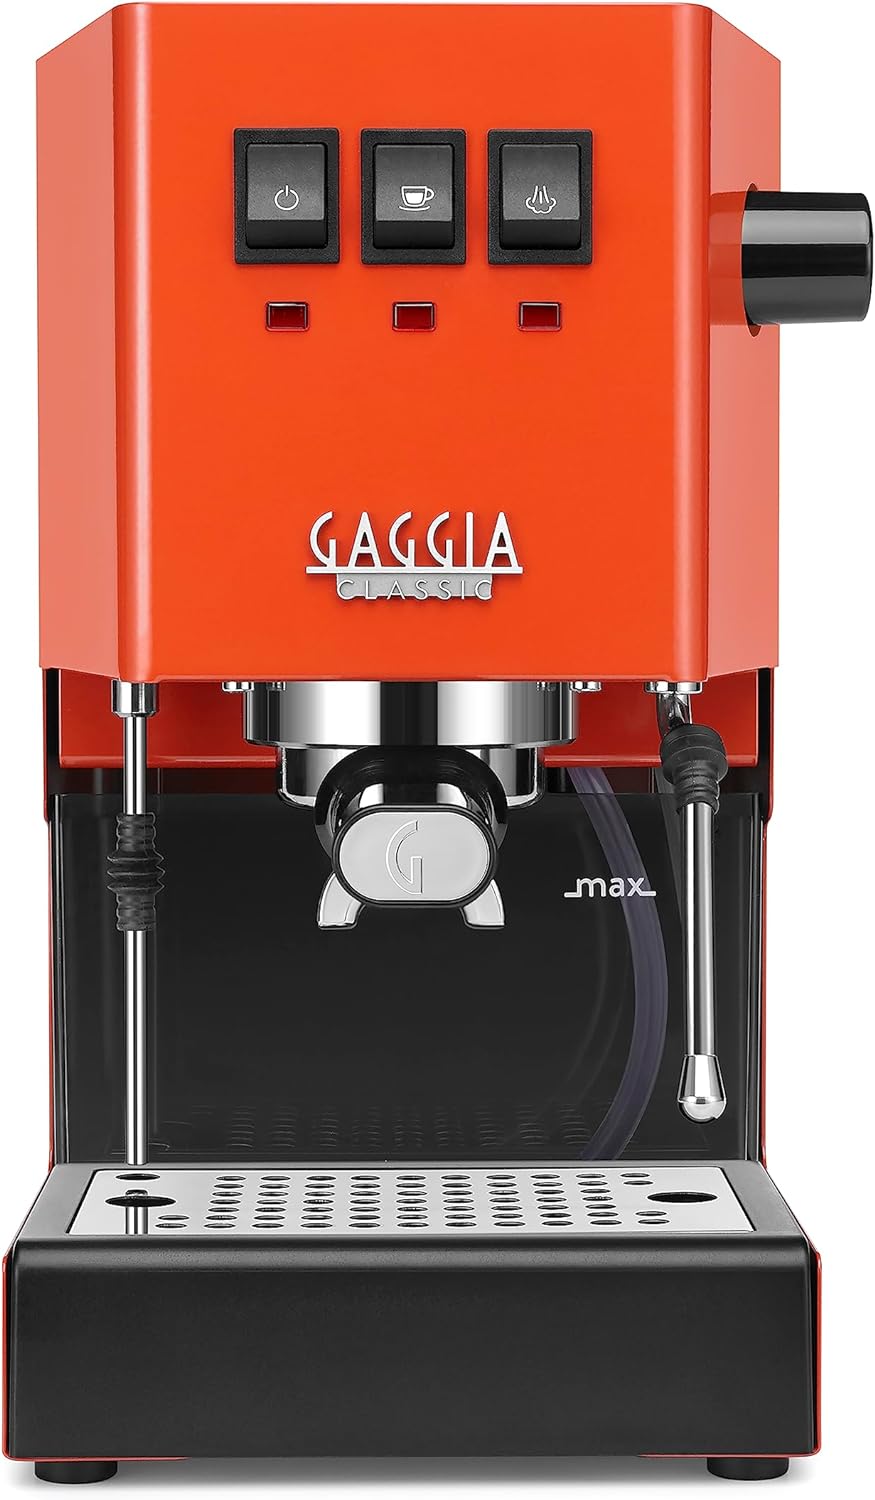 Gaggia RI9380/53 Classic Evo Pro Espresso Machine Review